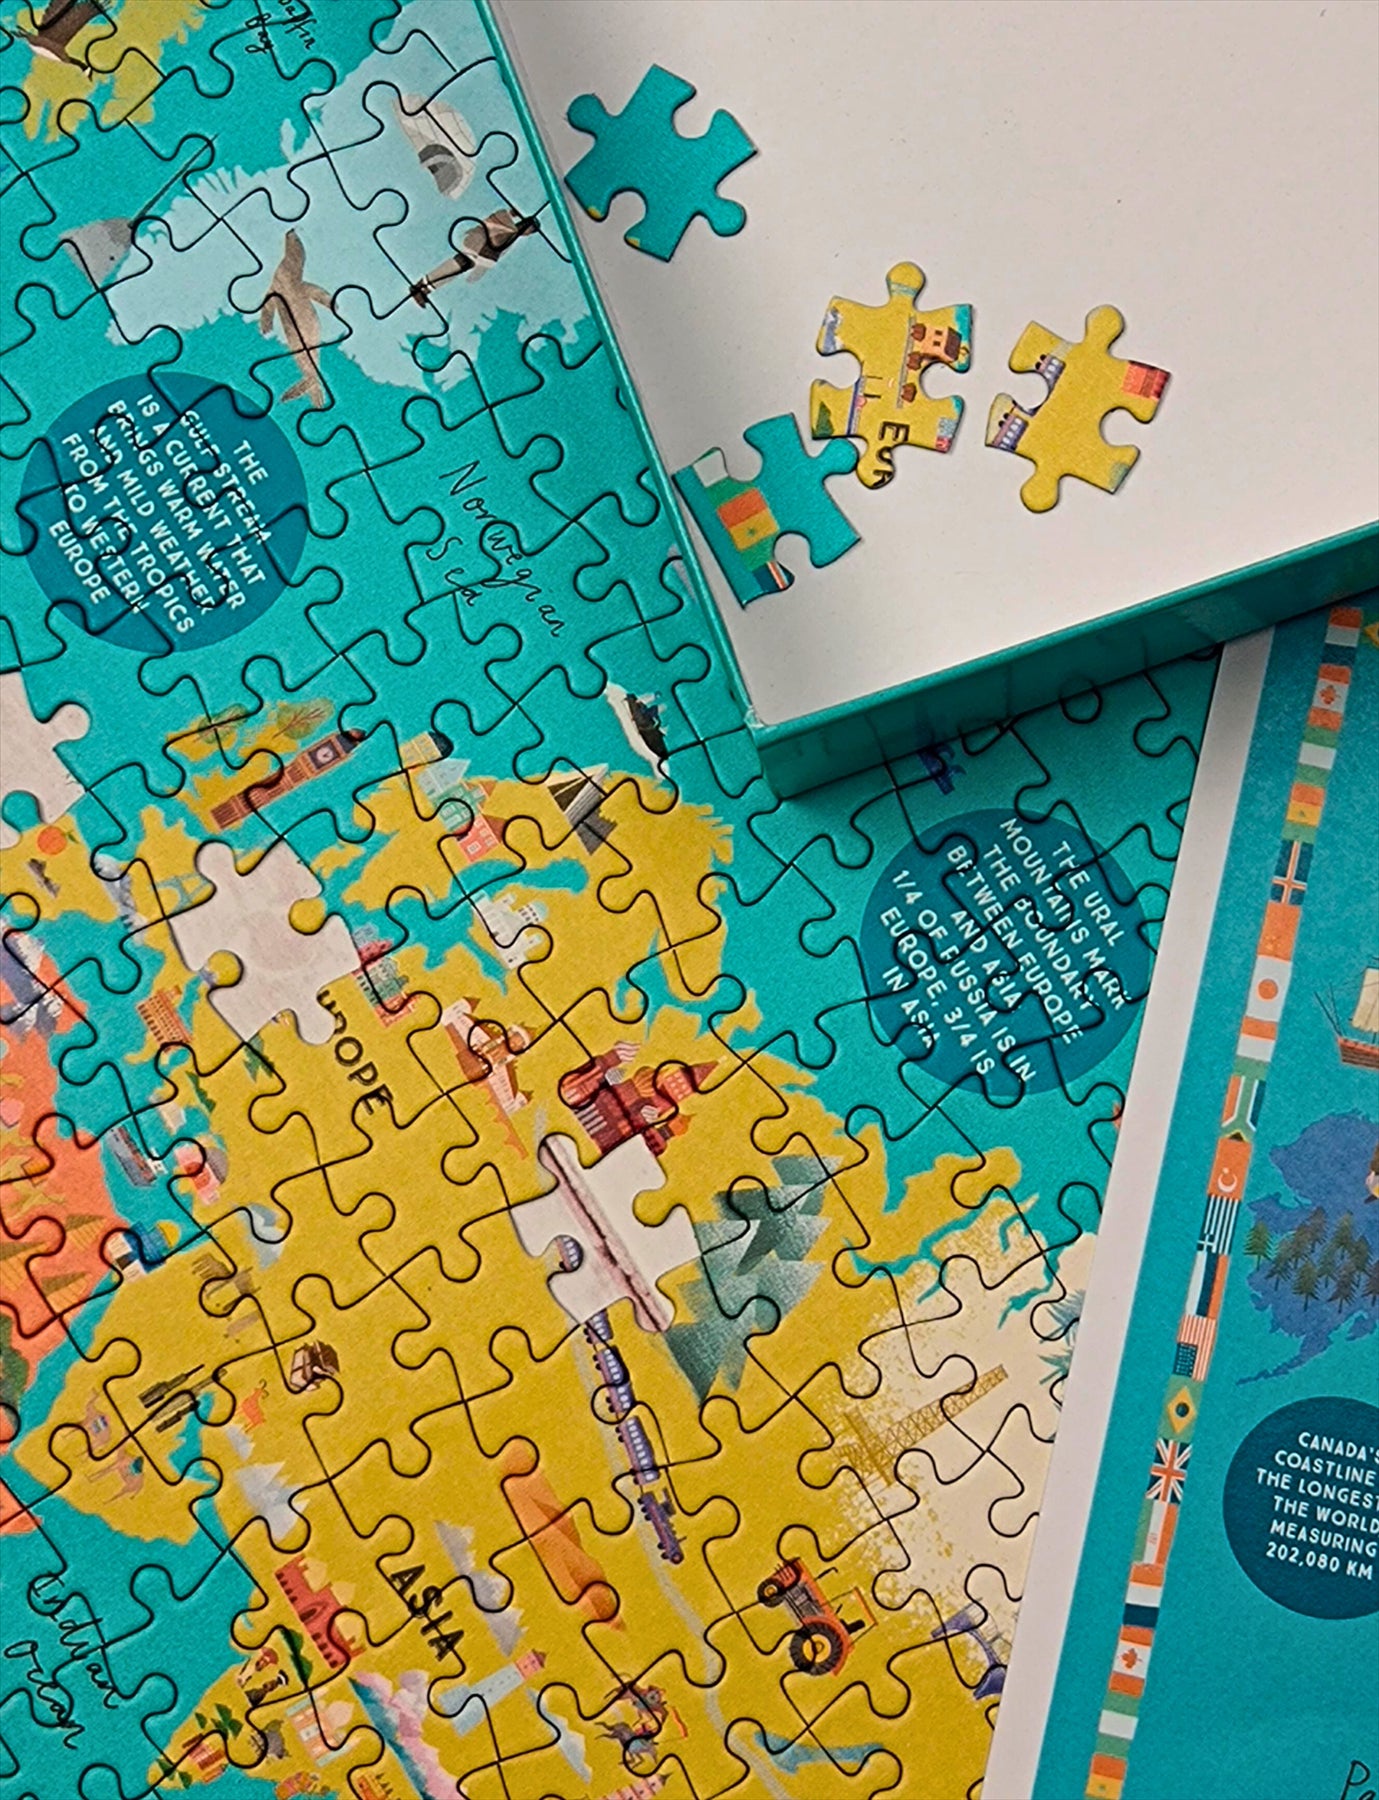 Puzzle 50 pièces carte du monde